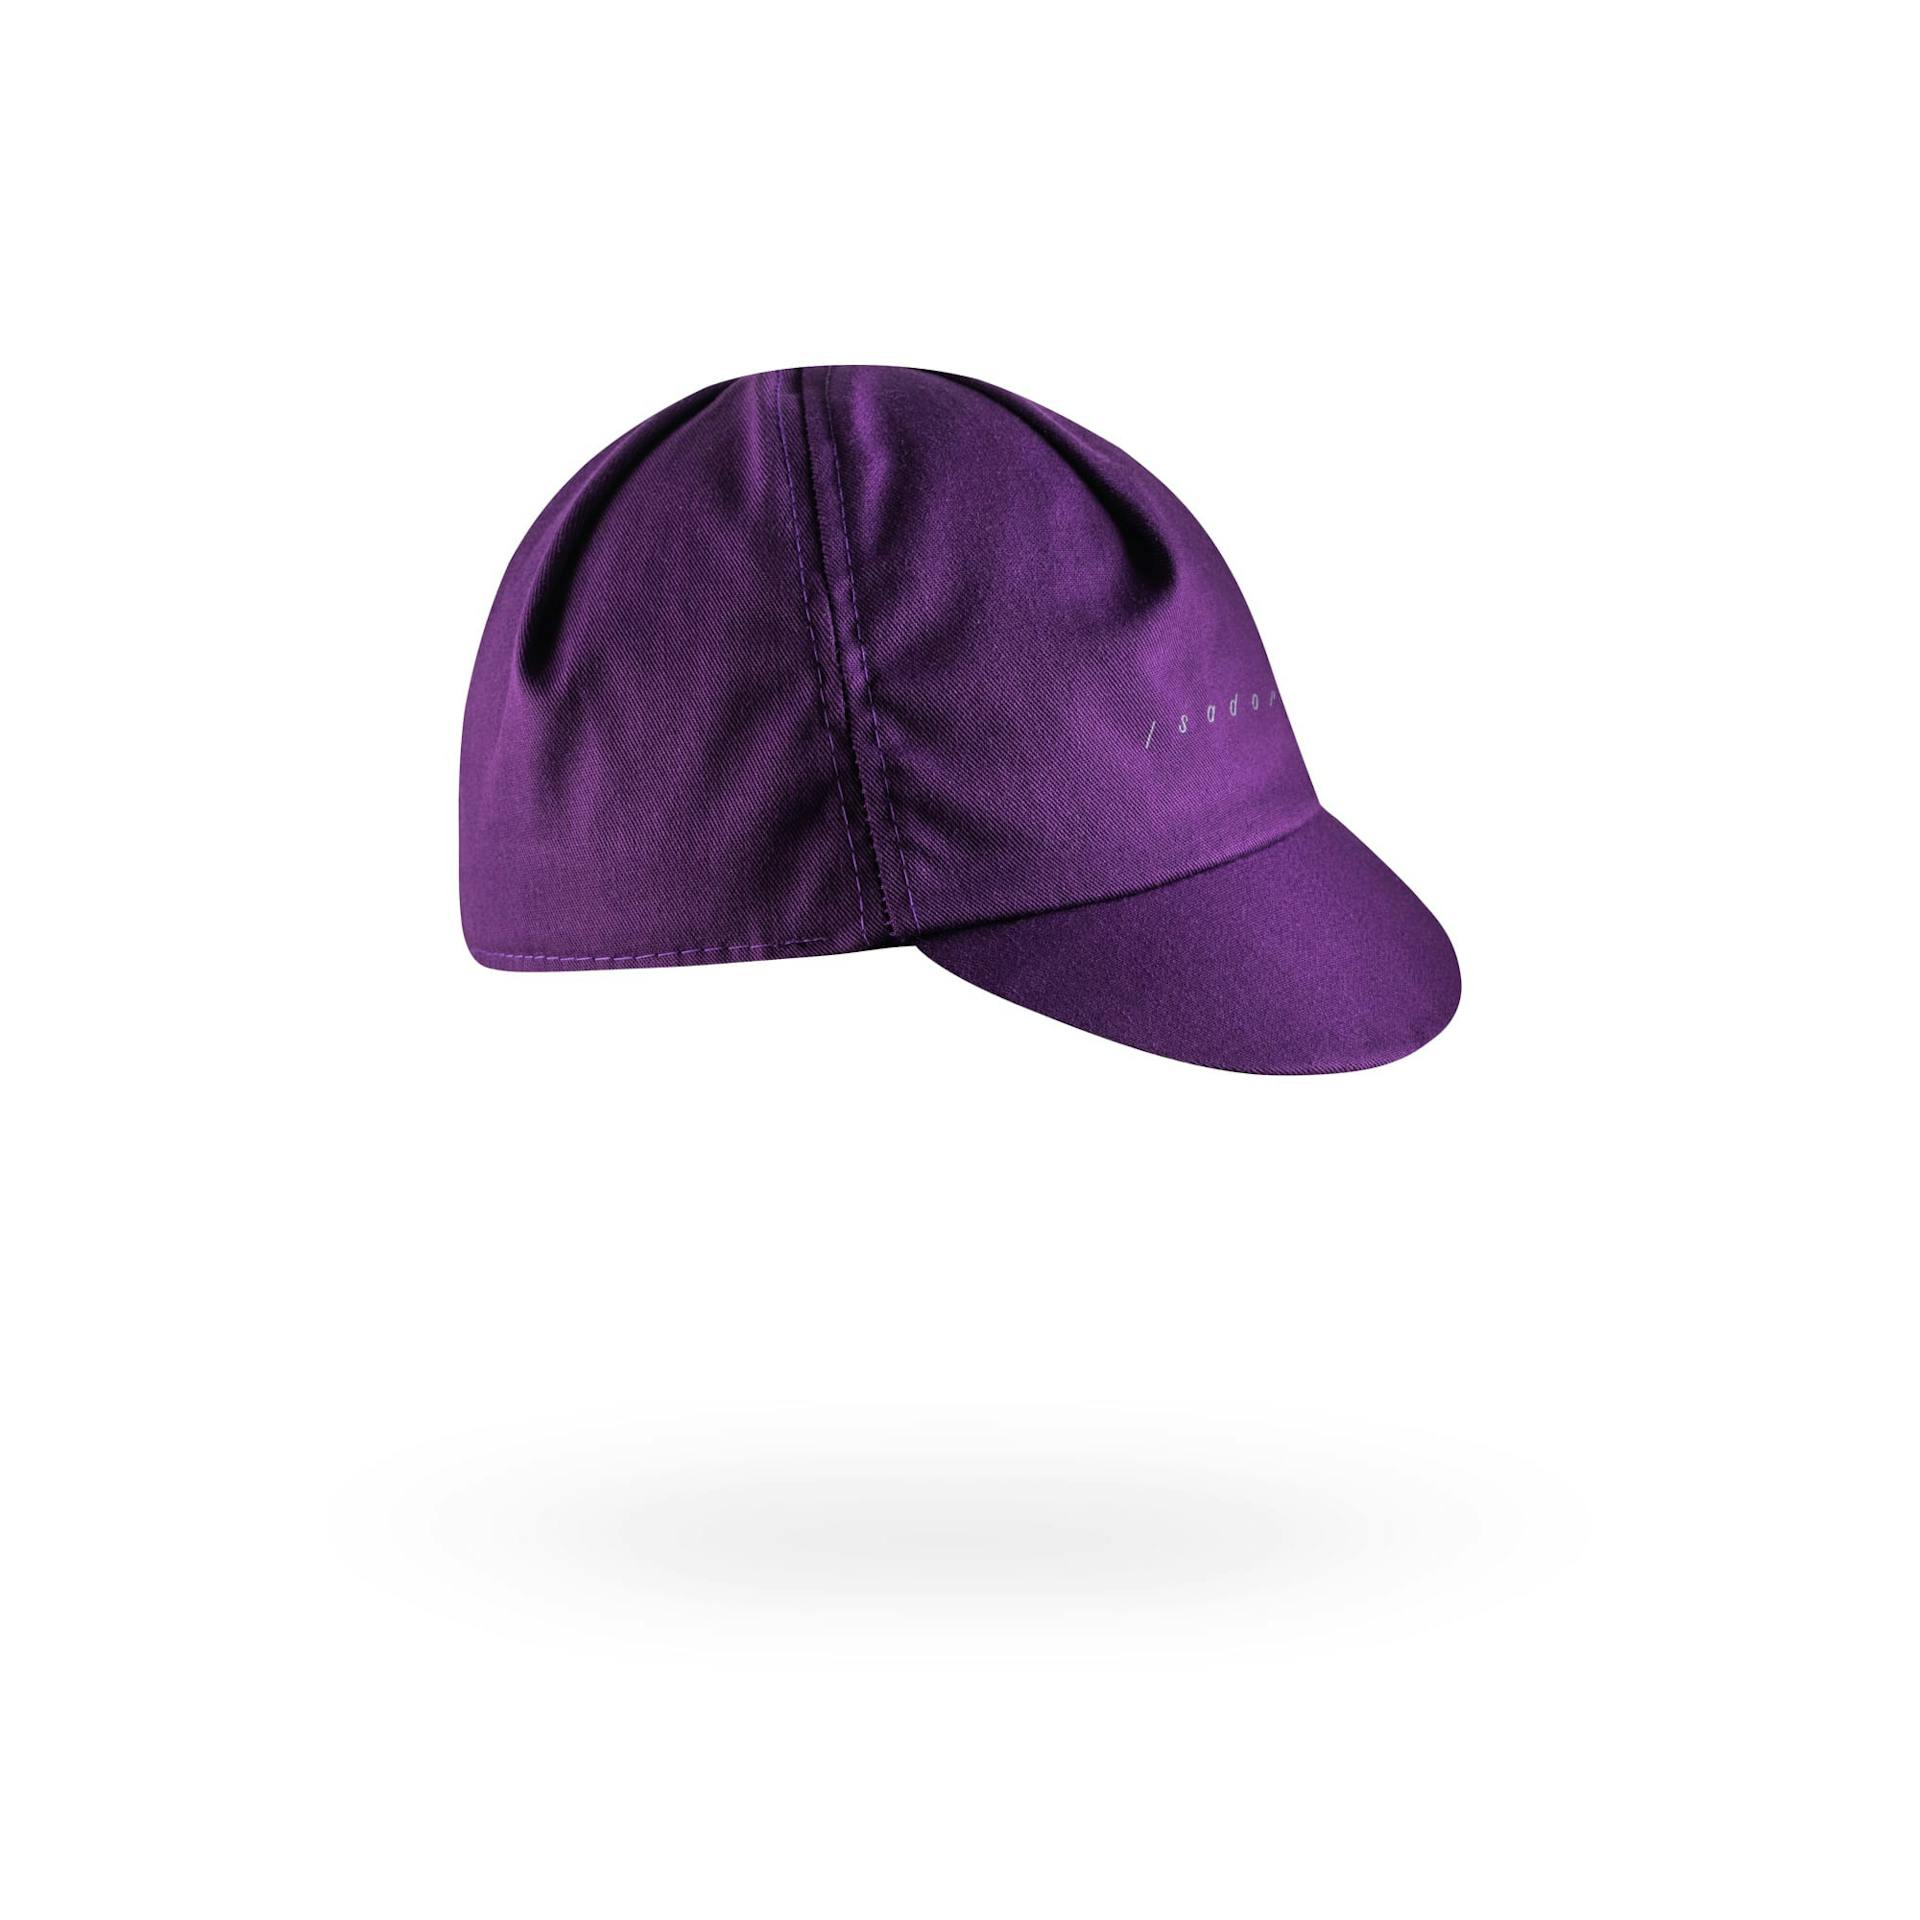 Signature Cap - Dark Purple
                        